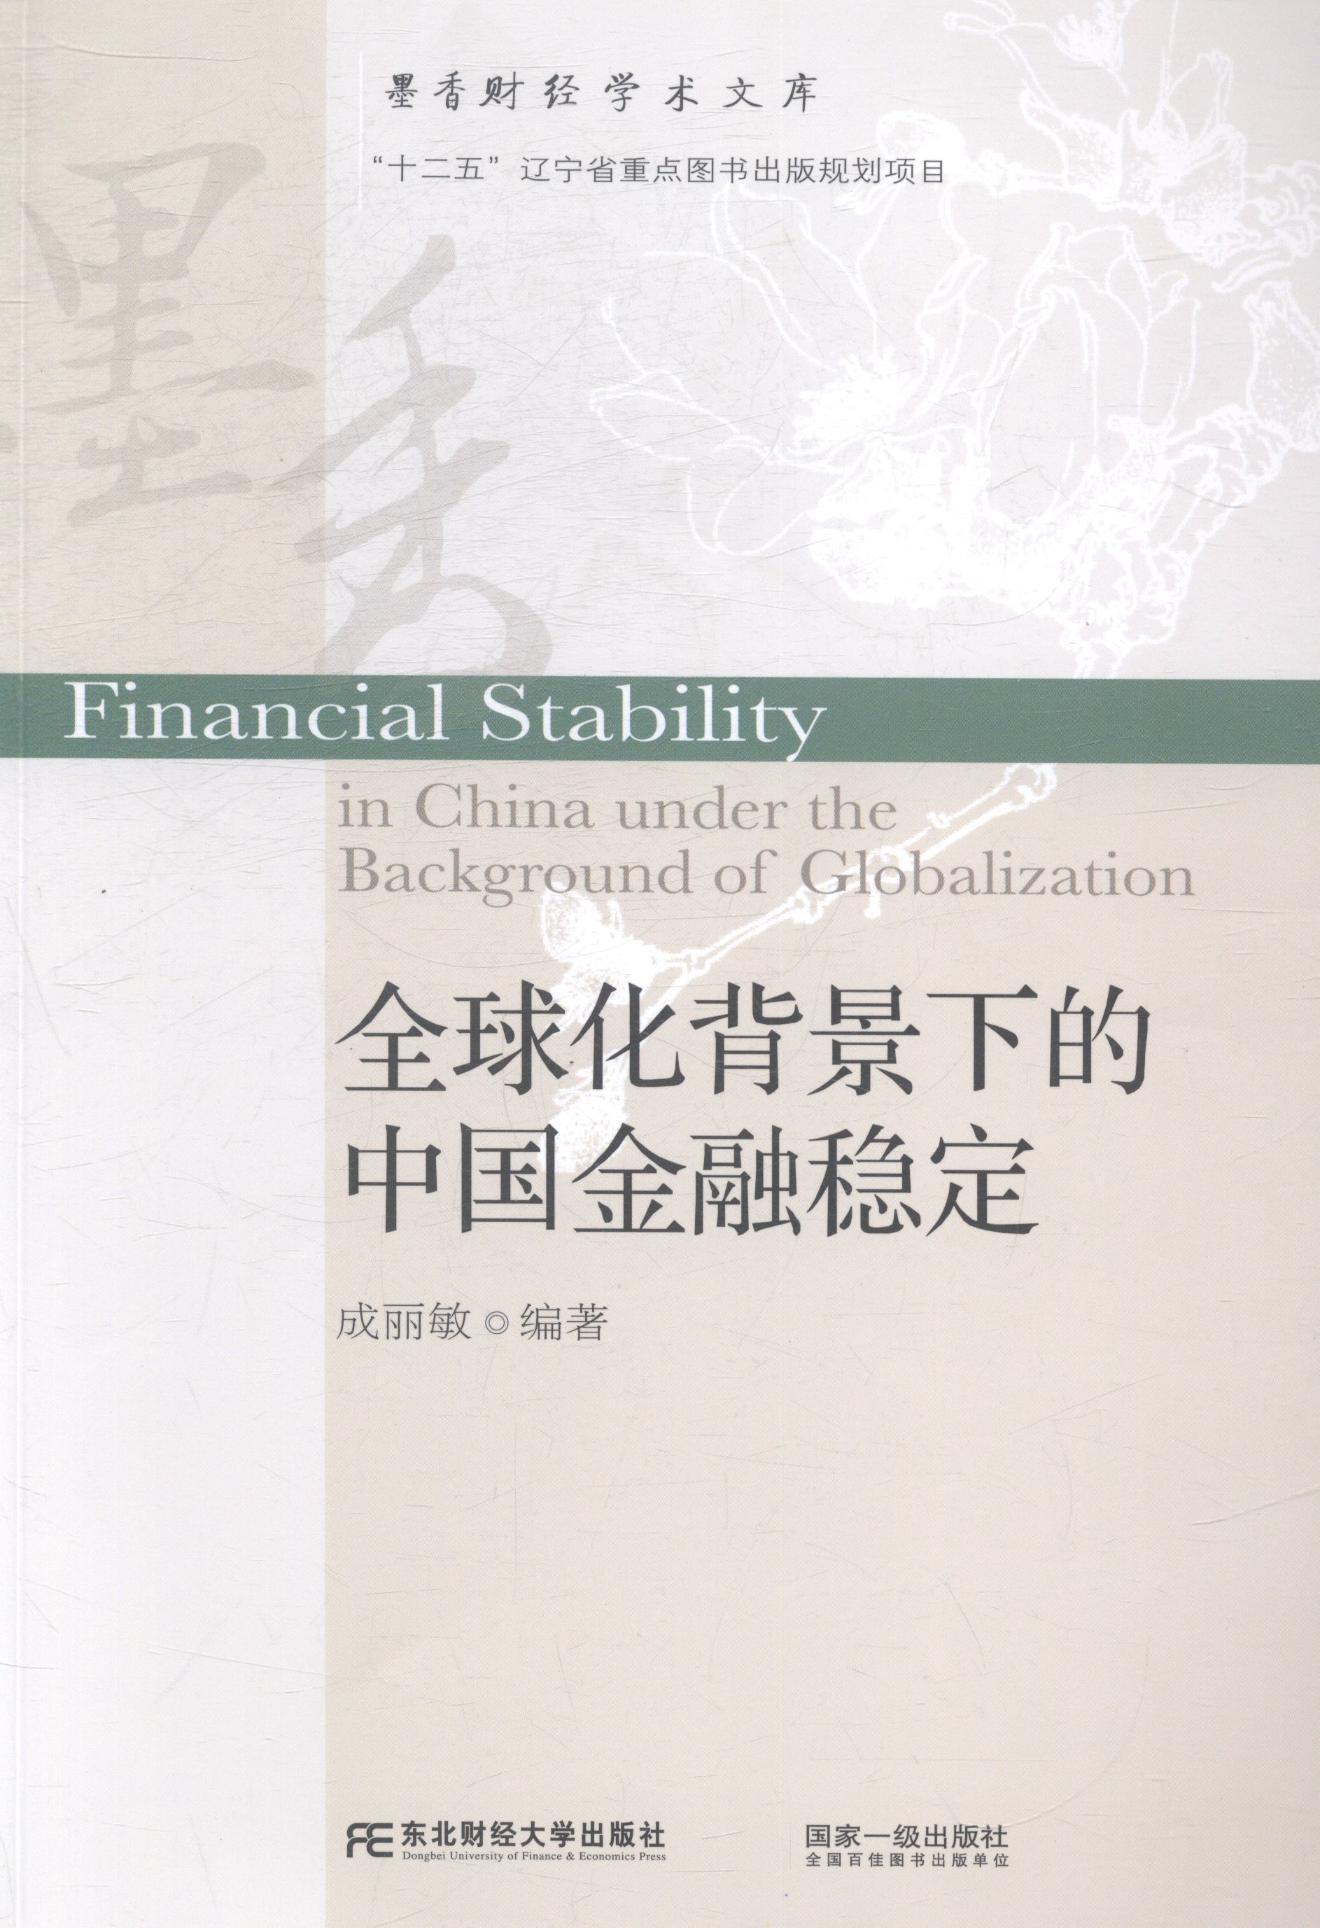 [rt] 全球化背景下的中国金融稳定  成丽敏  东北财经大学出版社  经济  金融市场研究中国